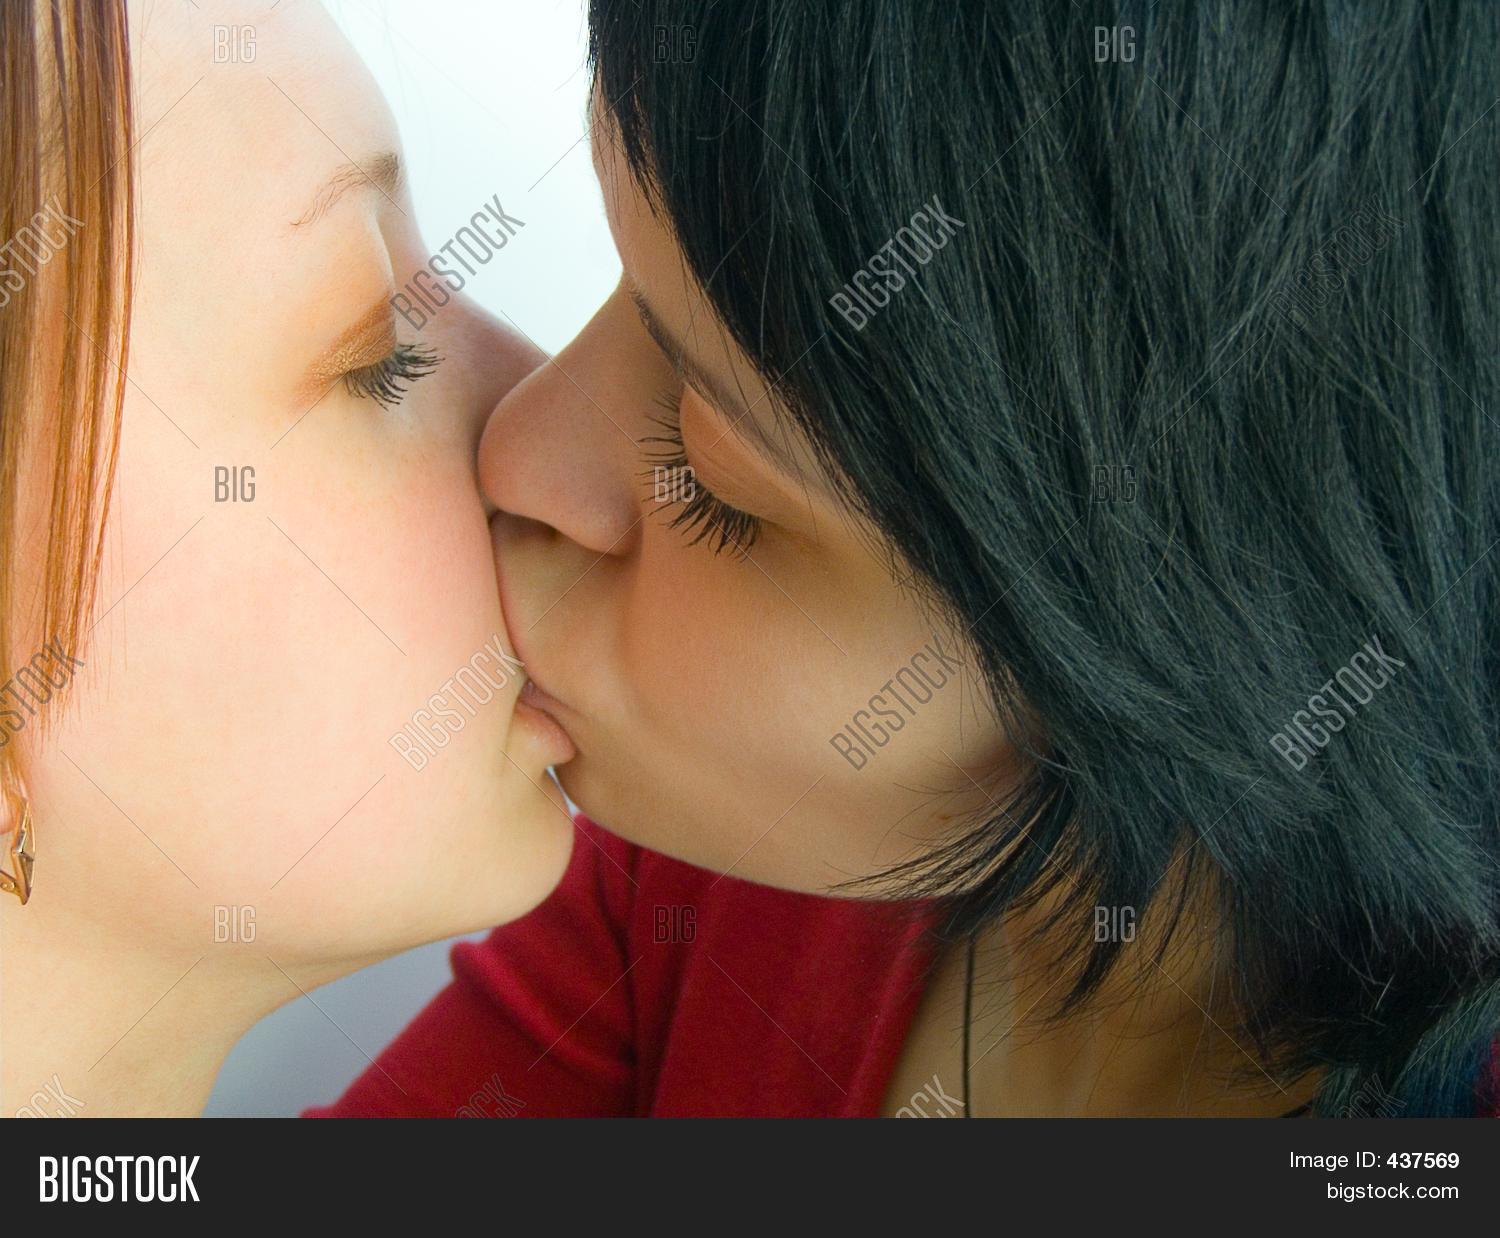 big lips lesbian kissing